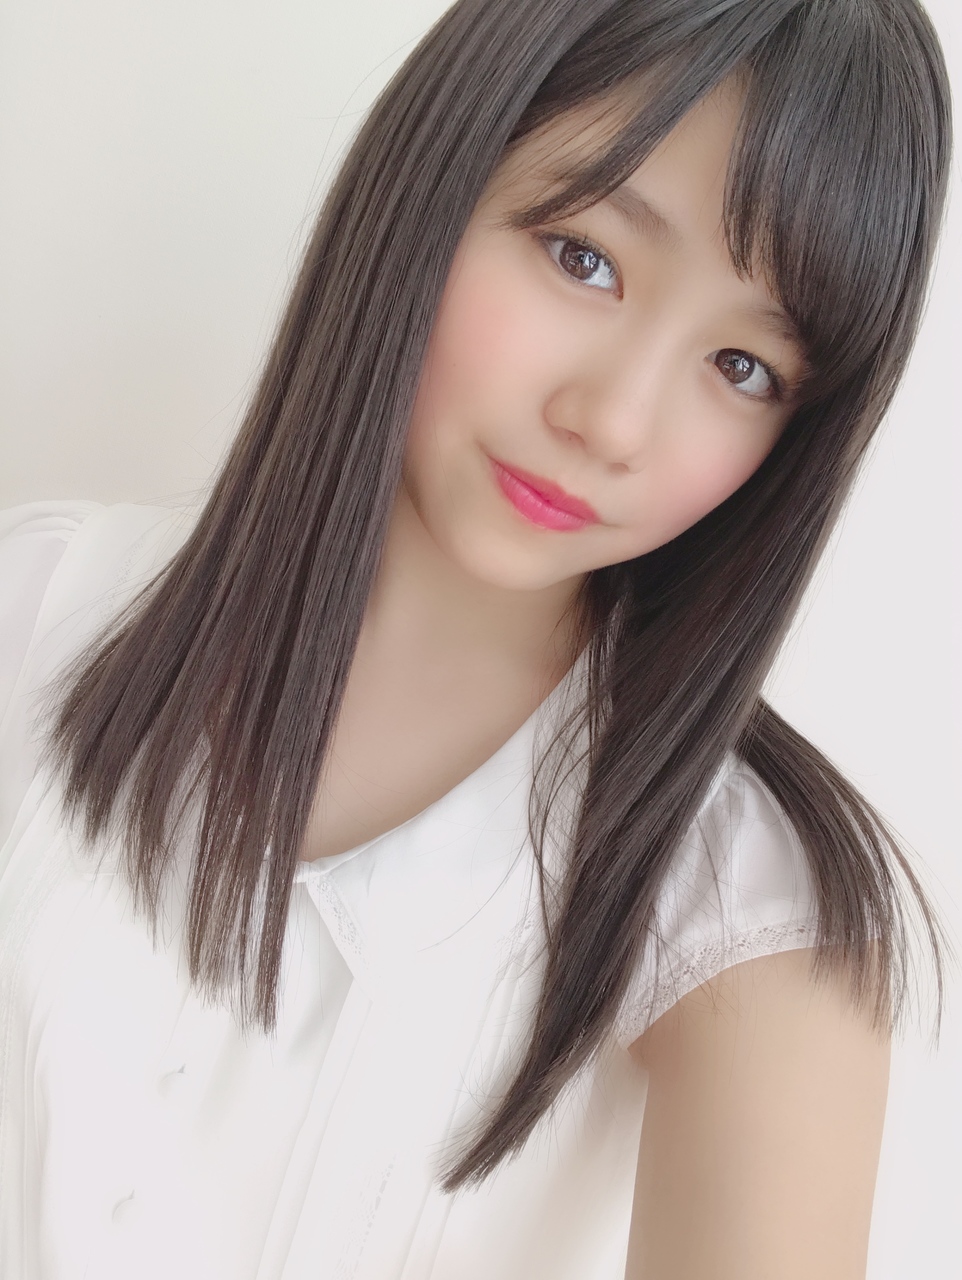 欅坂46メンバー最新の握手会人気順ランキングtop25 卒業メンバーも一部含む Aikru アイクル かわいい女の子の情報まとめサイト